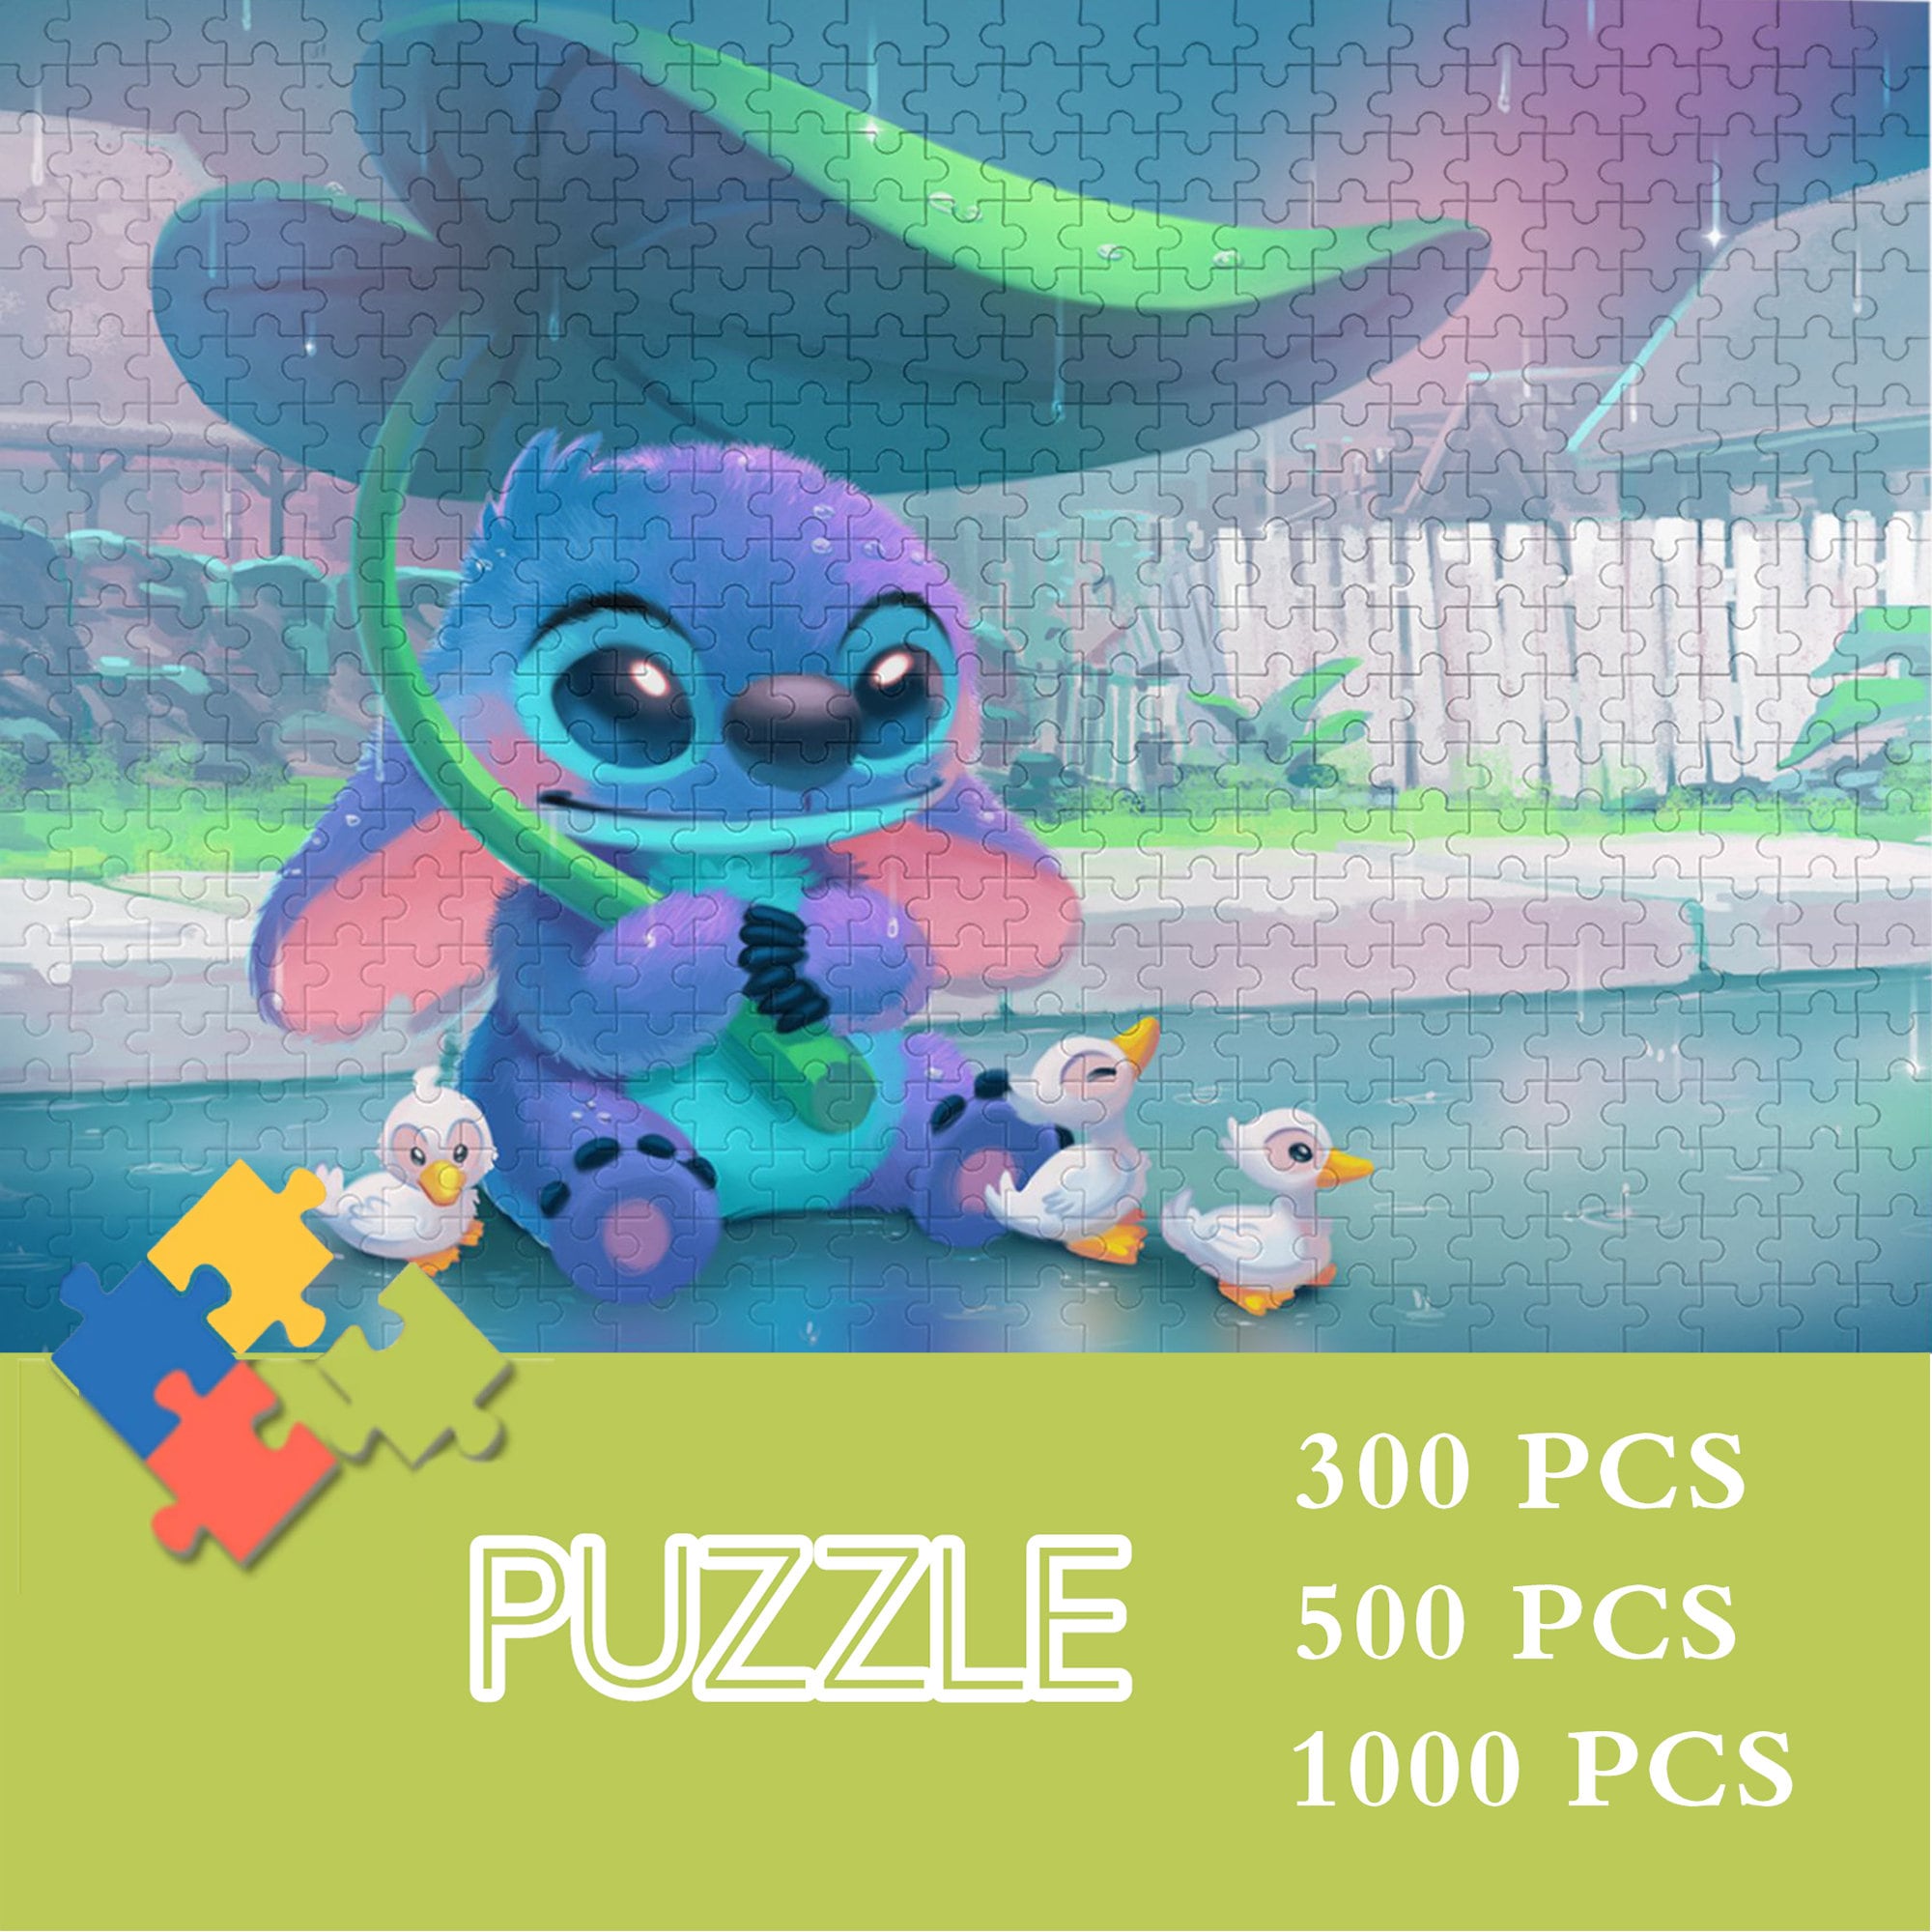 2021 Disney Lilo And Stitch 500pc Jigsaw Puzzle 11”x14” Sealed